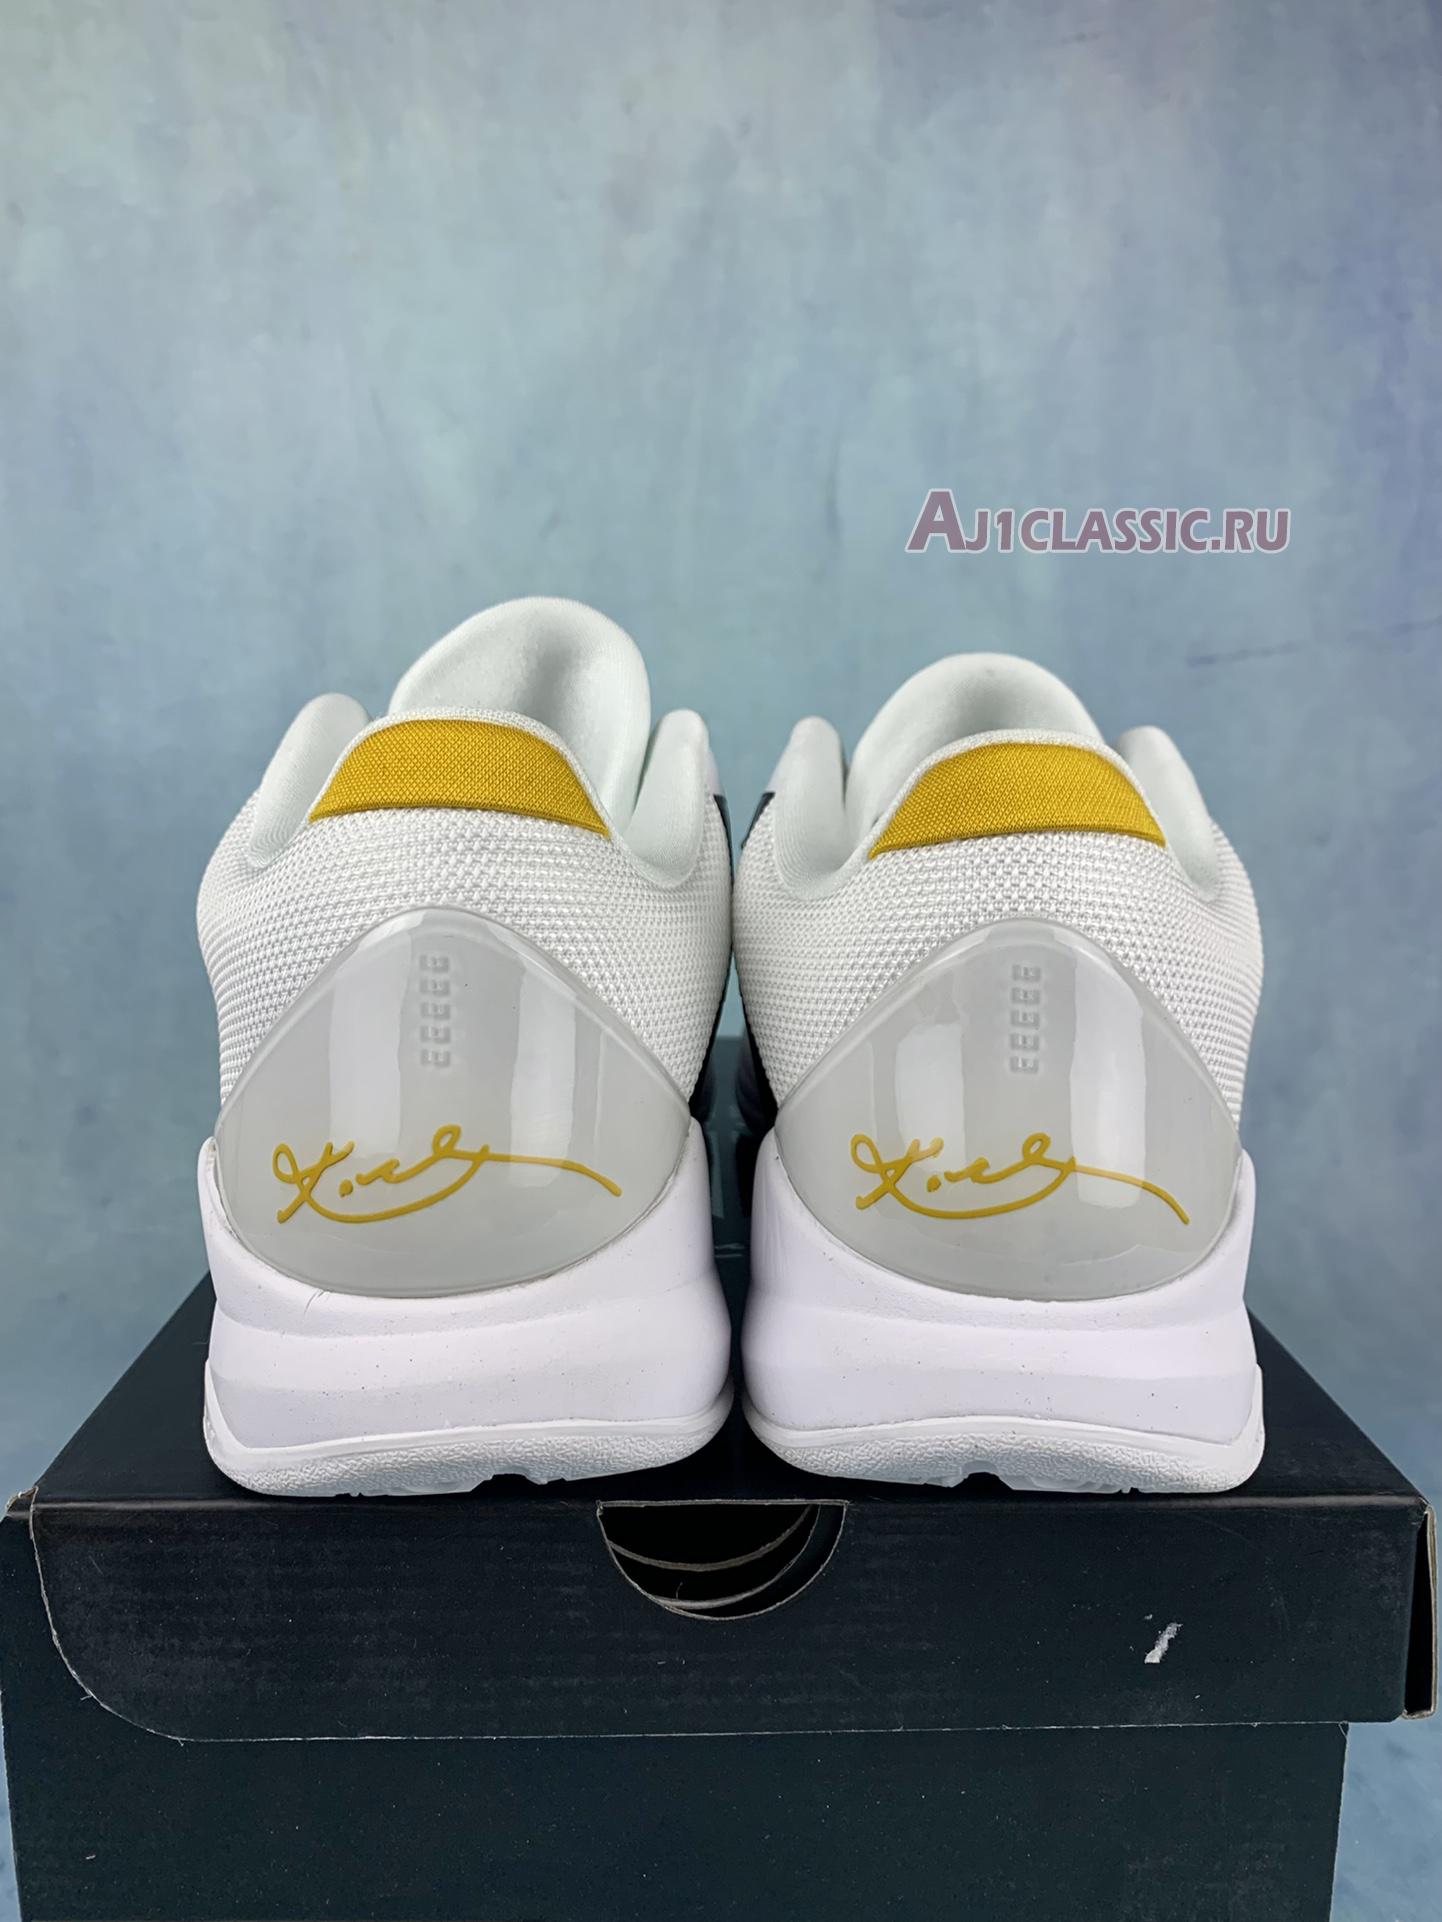 Nike Zoom Kobe 5 Protro "Alternate Bruce Lee" CD4991-101